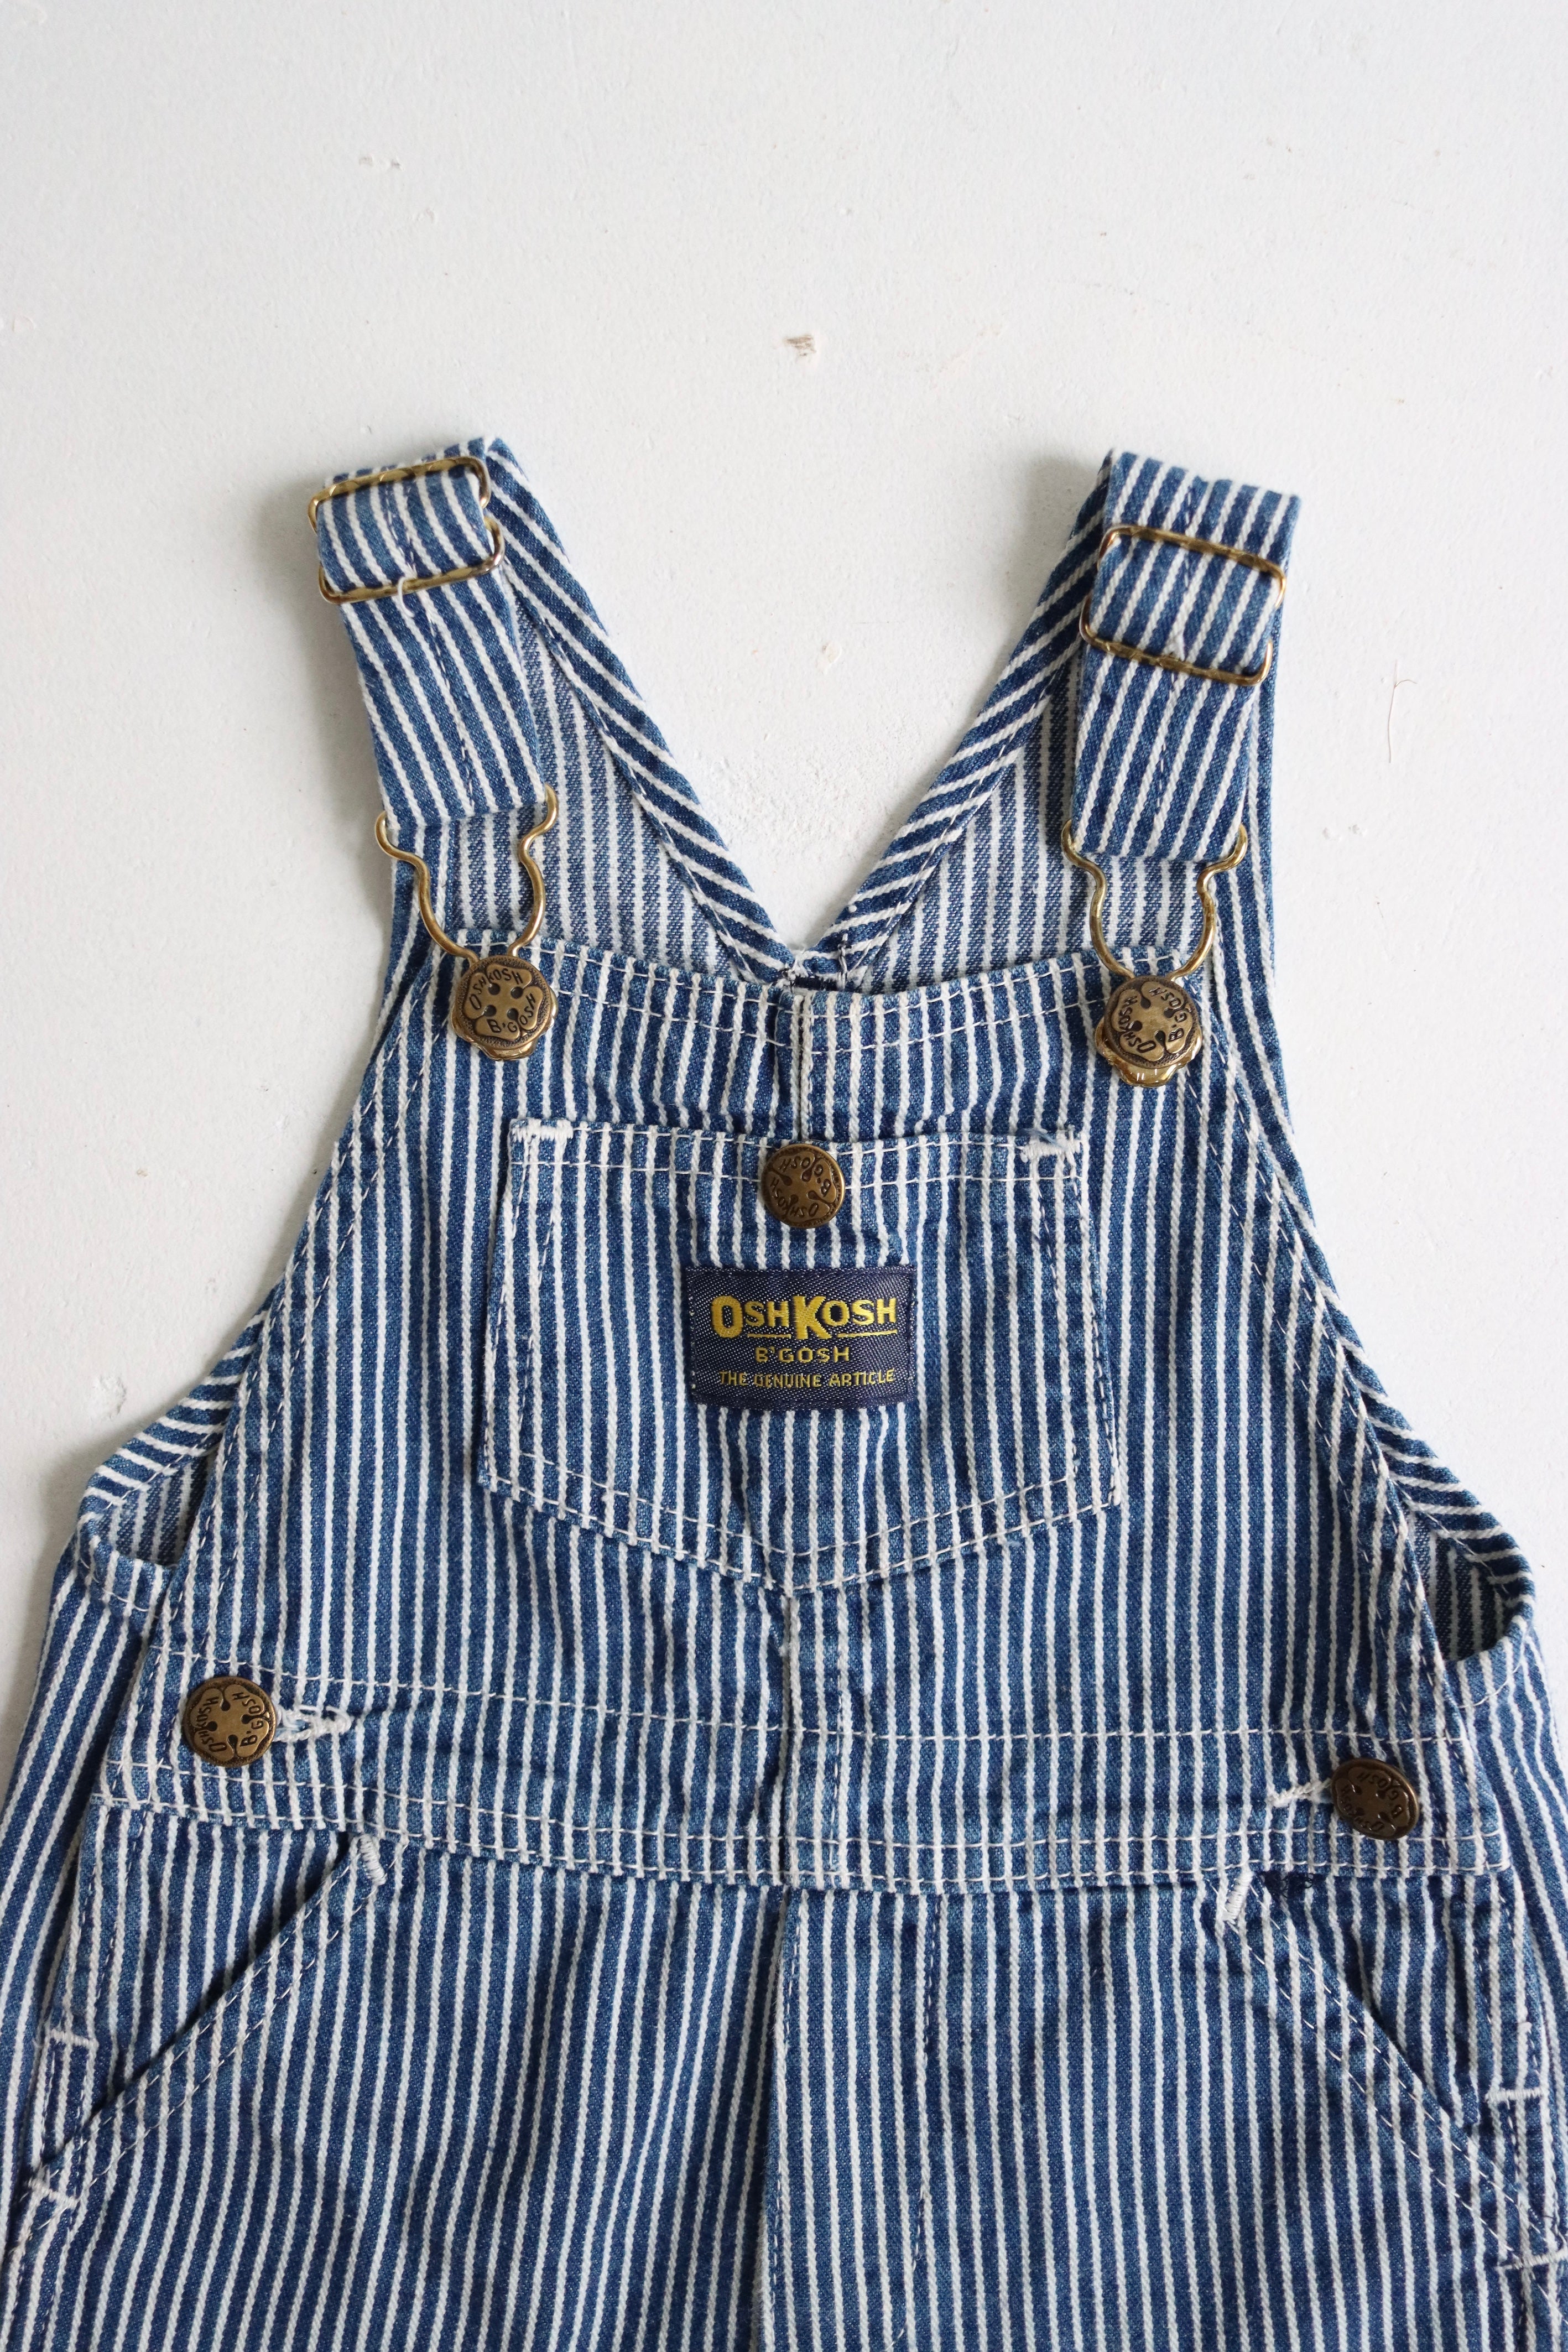 Vintage blue OshKosh shortalls - size 6-12 months